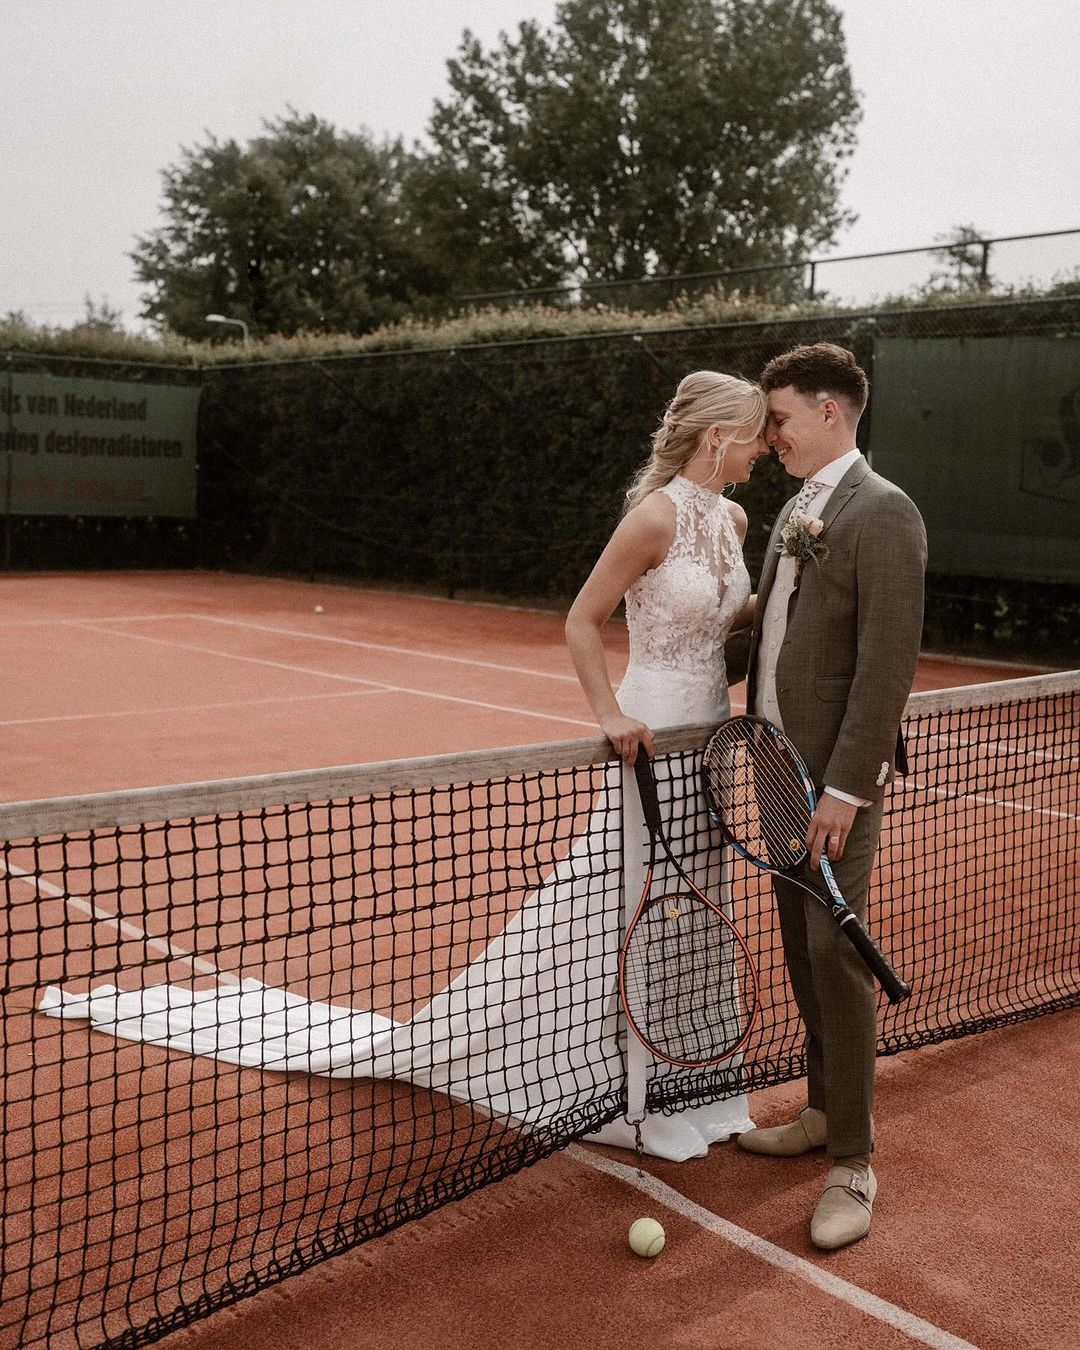 Bruidspaar gaat tennis spelen tijdens hun bruiloft